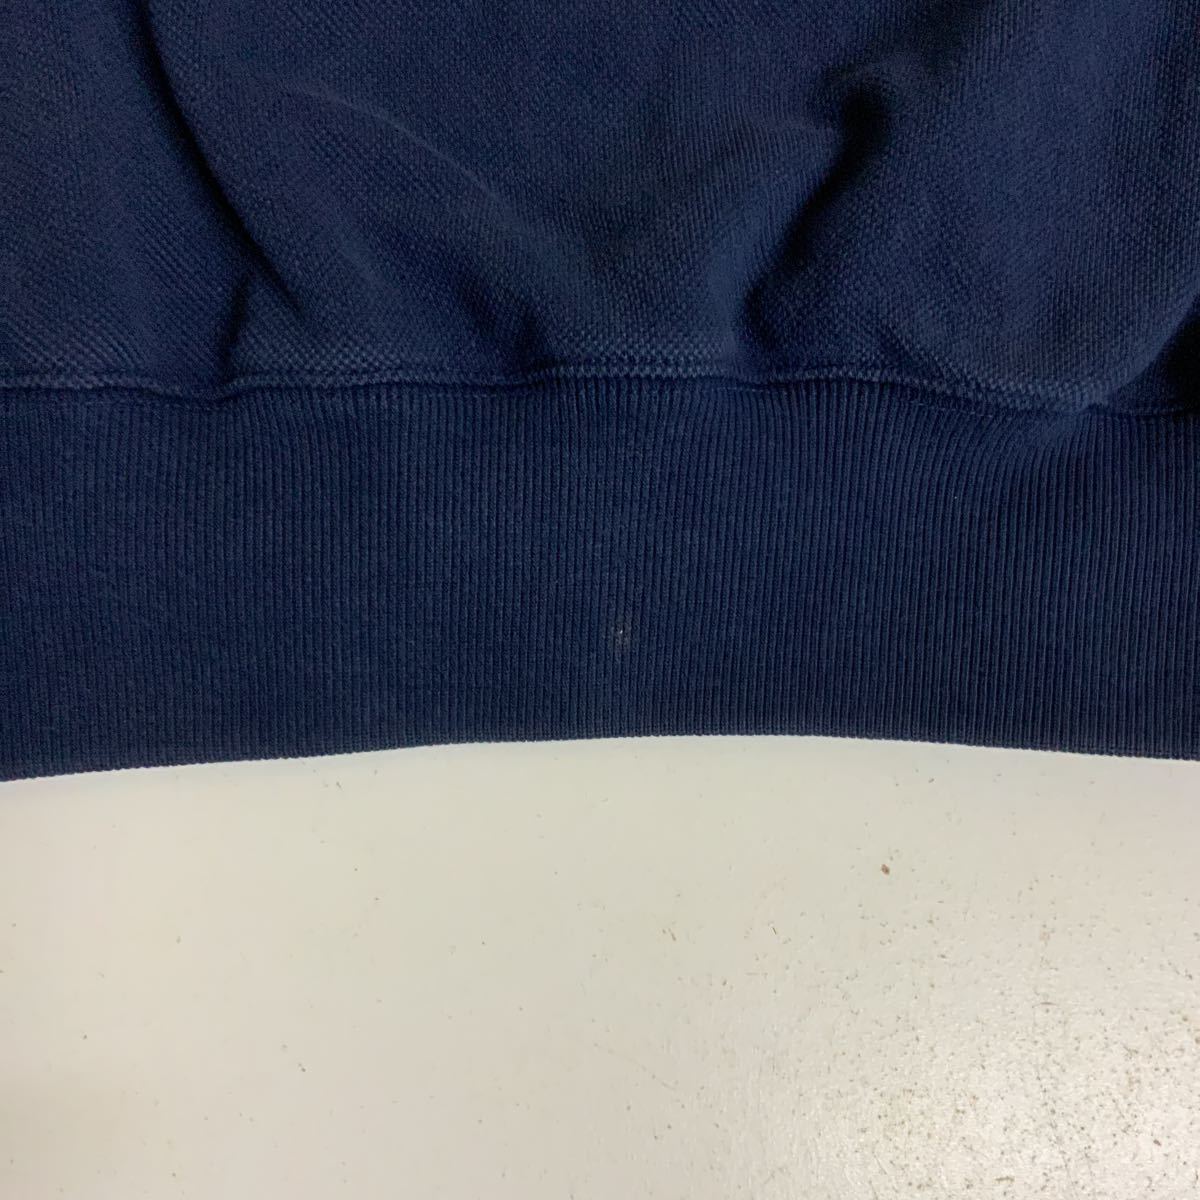 Polo golf Ralph Lauren V шея тренировочный футболка б/у одежда темно-синий цвет мужской M